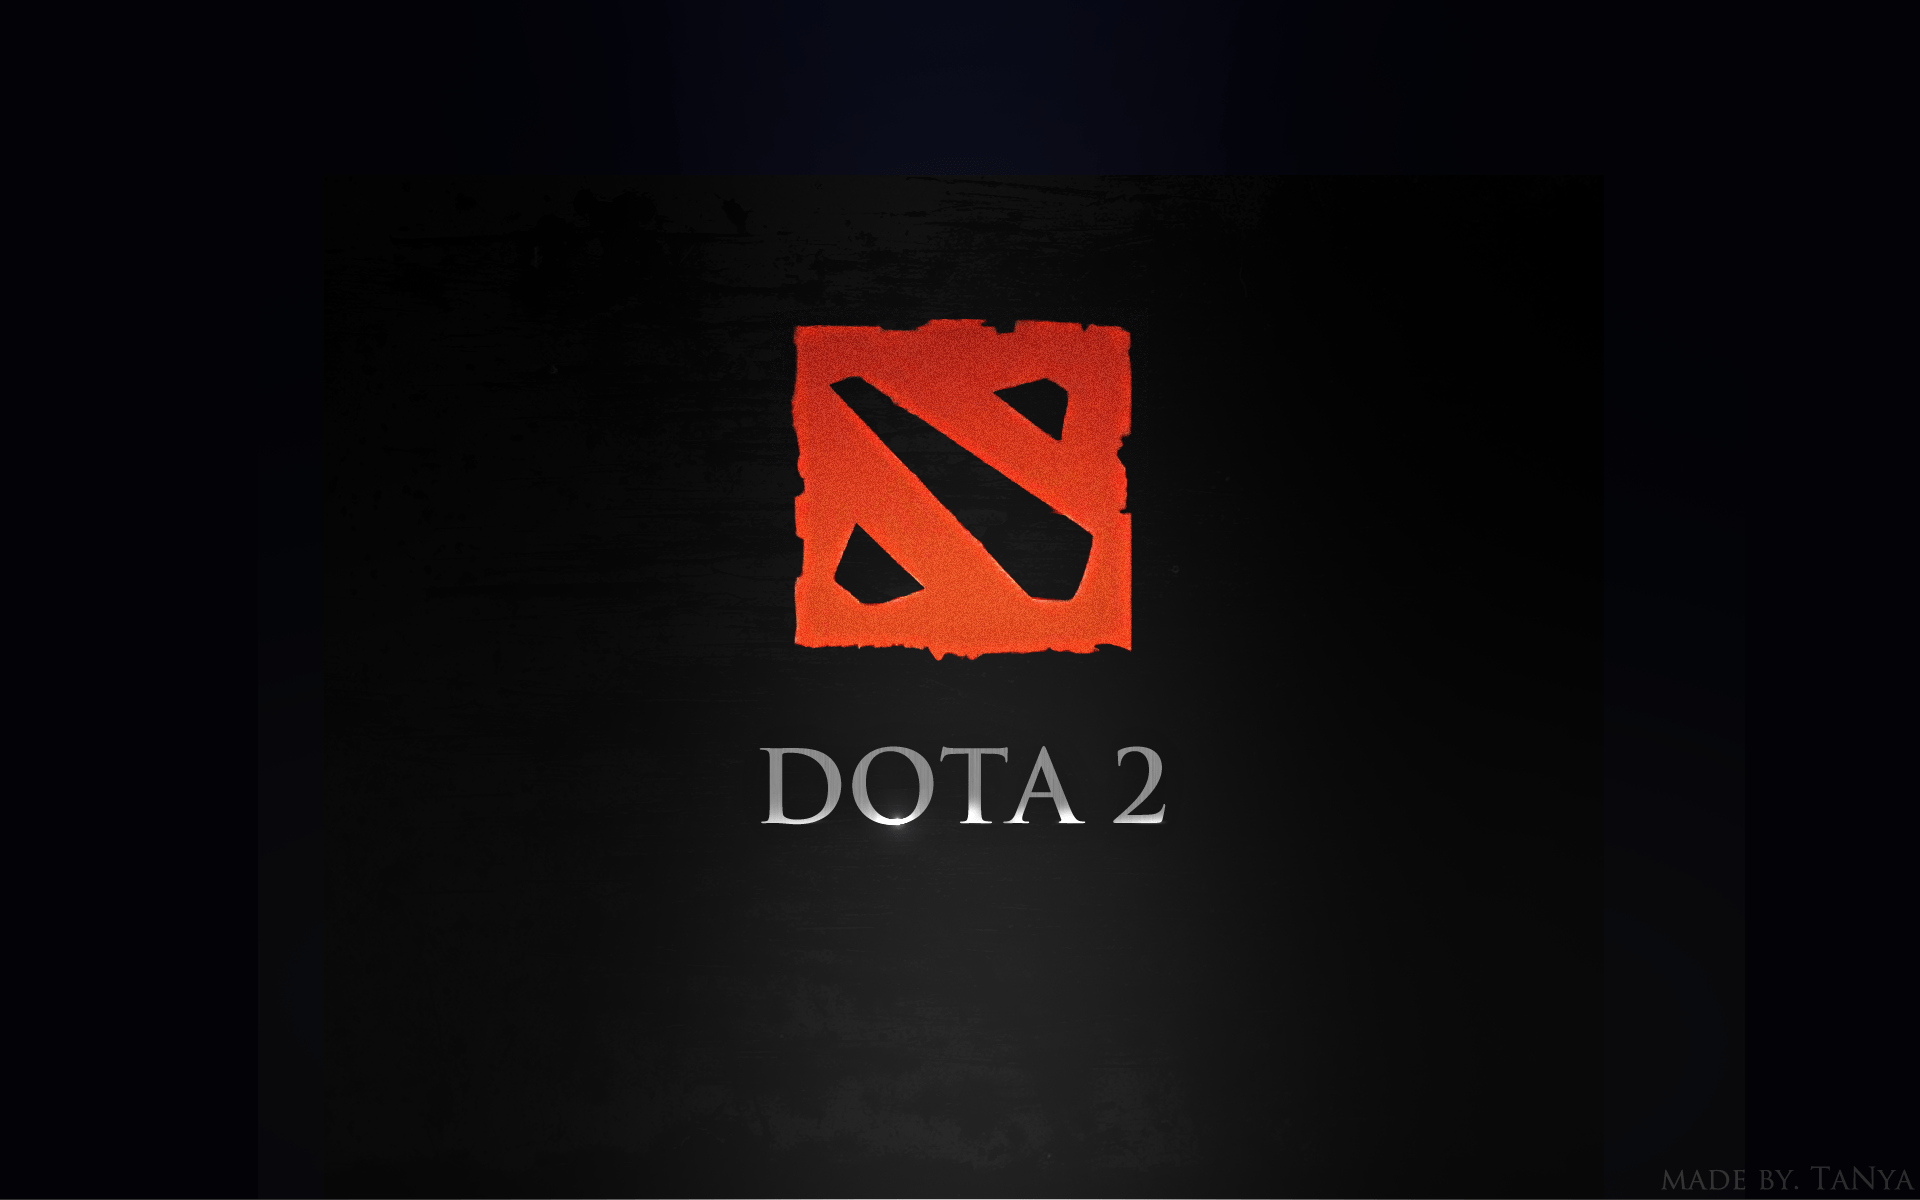 Пользователь реддита попросил Valve сделать оппонентов по Dota 2 анонимными